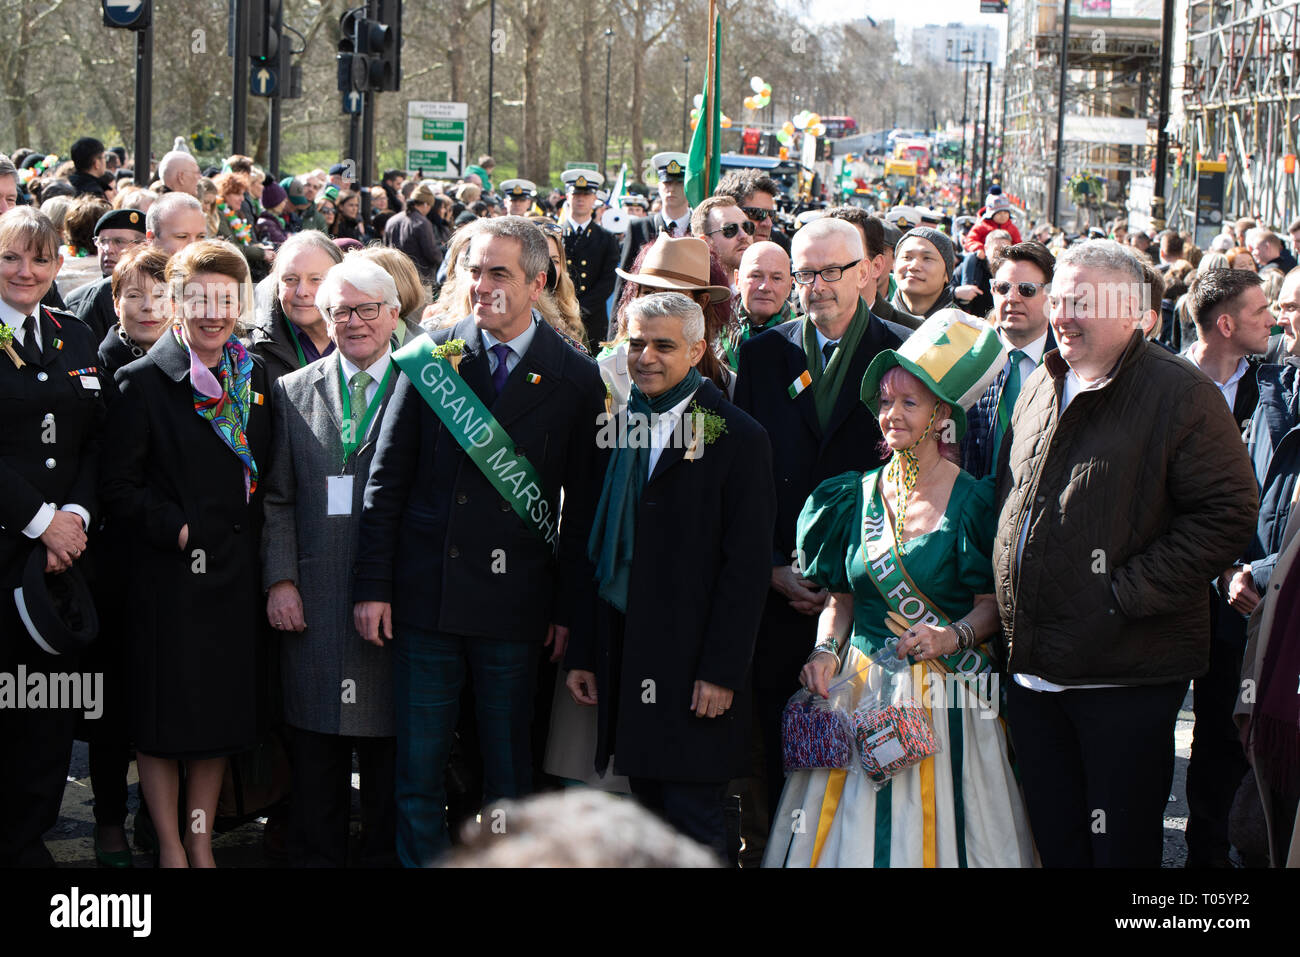 Londres, Reino Unido, 17 de marzo de 2019 El London St Patrick's day Festival, ahora en su 17 año, atrae a más de 125.000 personas a eventos en Londres y el festival y el desfile en el centro de Londres y Trafalgar Square. El tema de este año es #LondonIsOpen. Liderando el desfile fueron el Alcalde de Londres, Sadiq Khan y el actor James Nesbitt. Crédito: Ilyas Ayub/ Alamy Live News Foto de stock